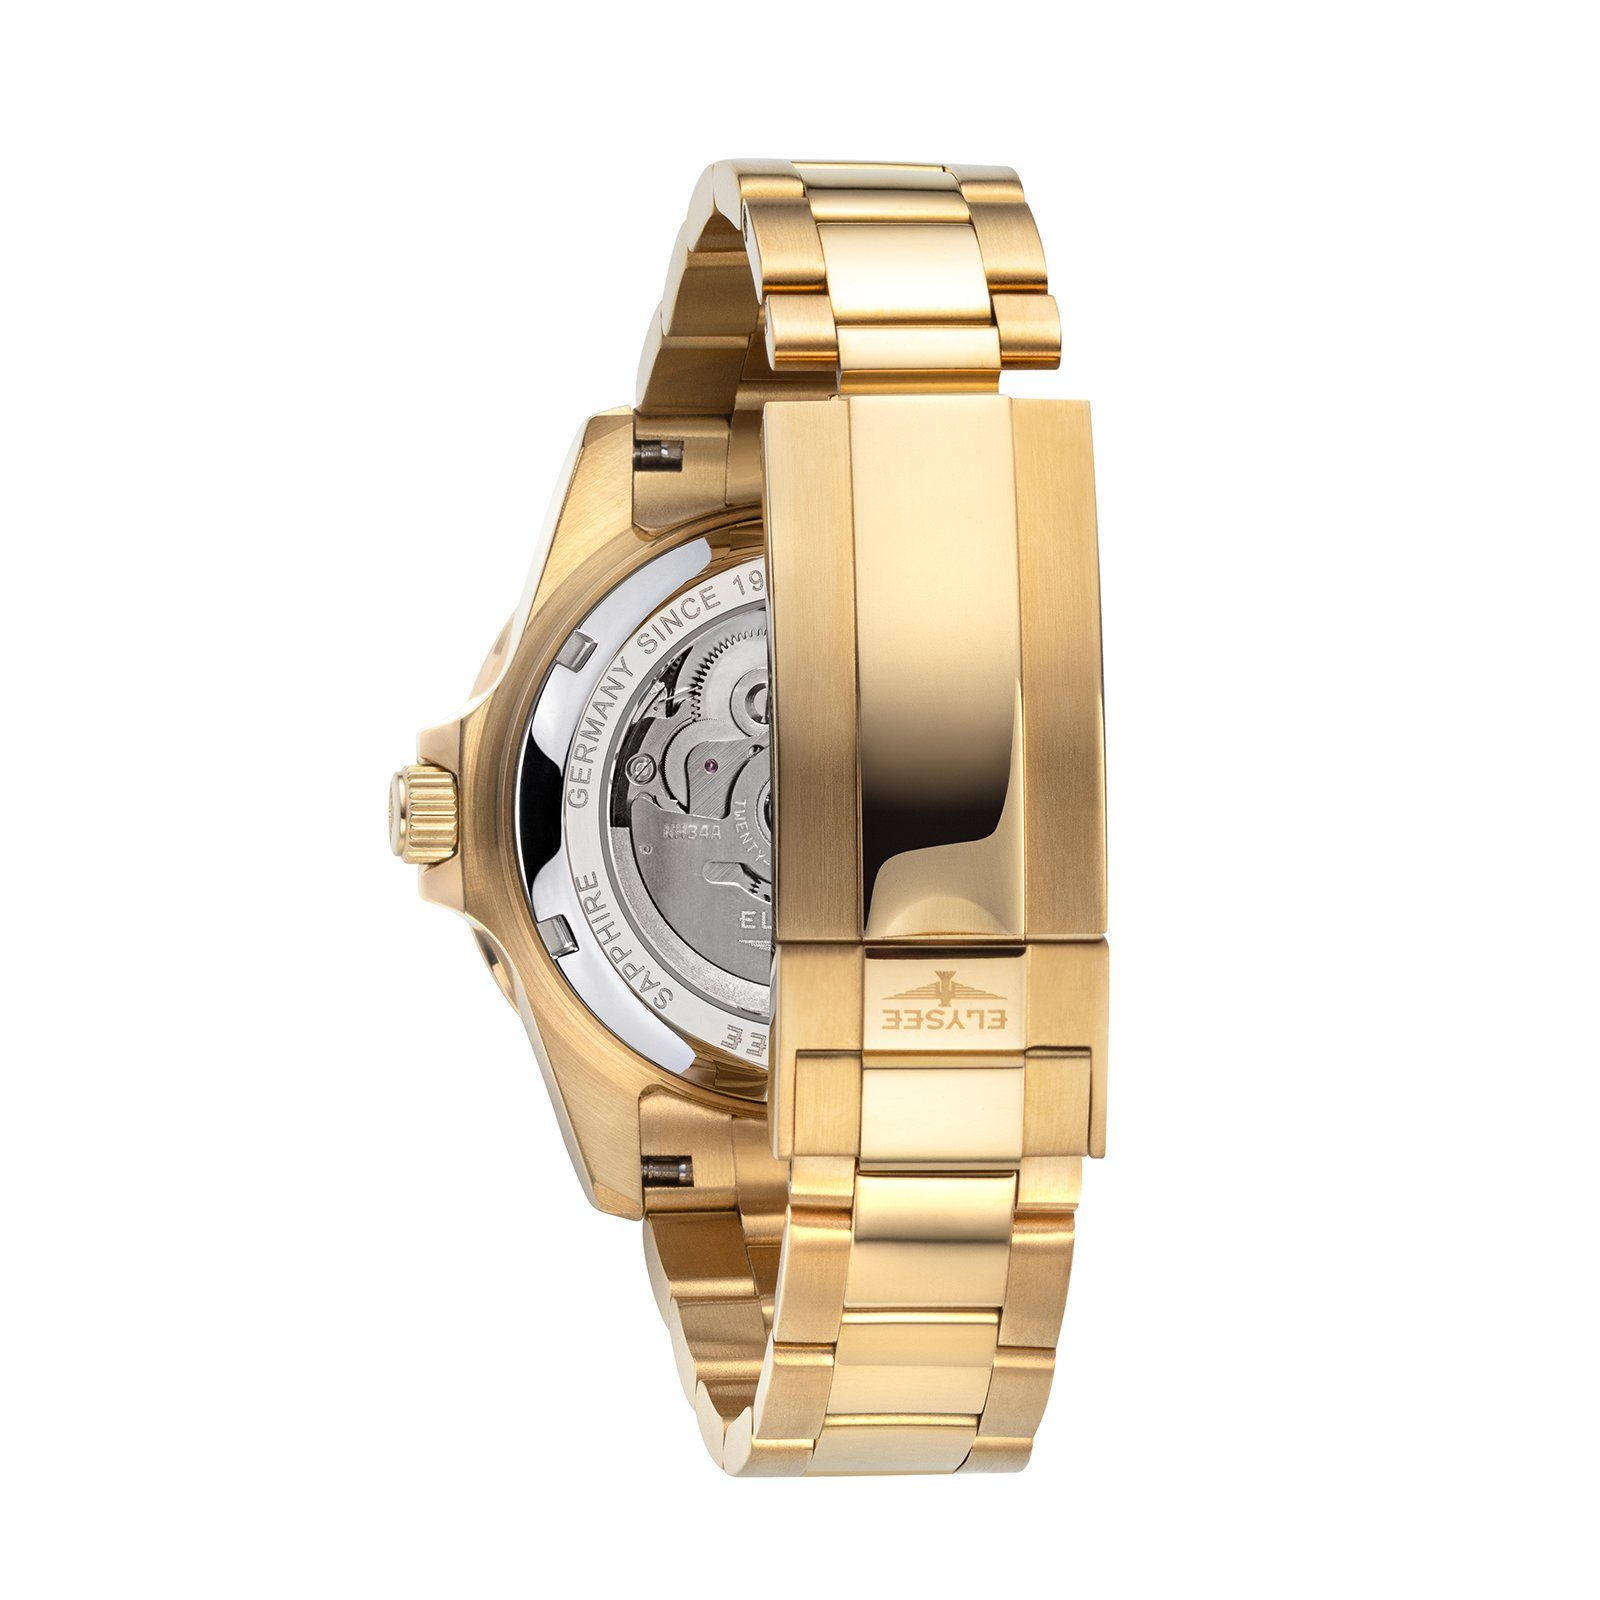 Elysee Automatikuhr auch gold 4-Zeiger-Uhr silber, GMT Edelstahl AUTOMATIC 40,5mm Geschenk ideal als Herrenuhr